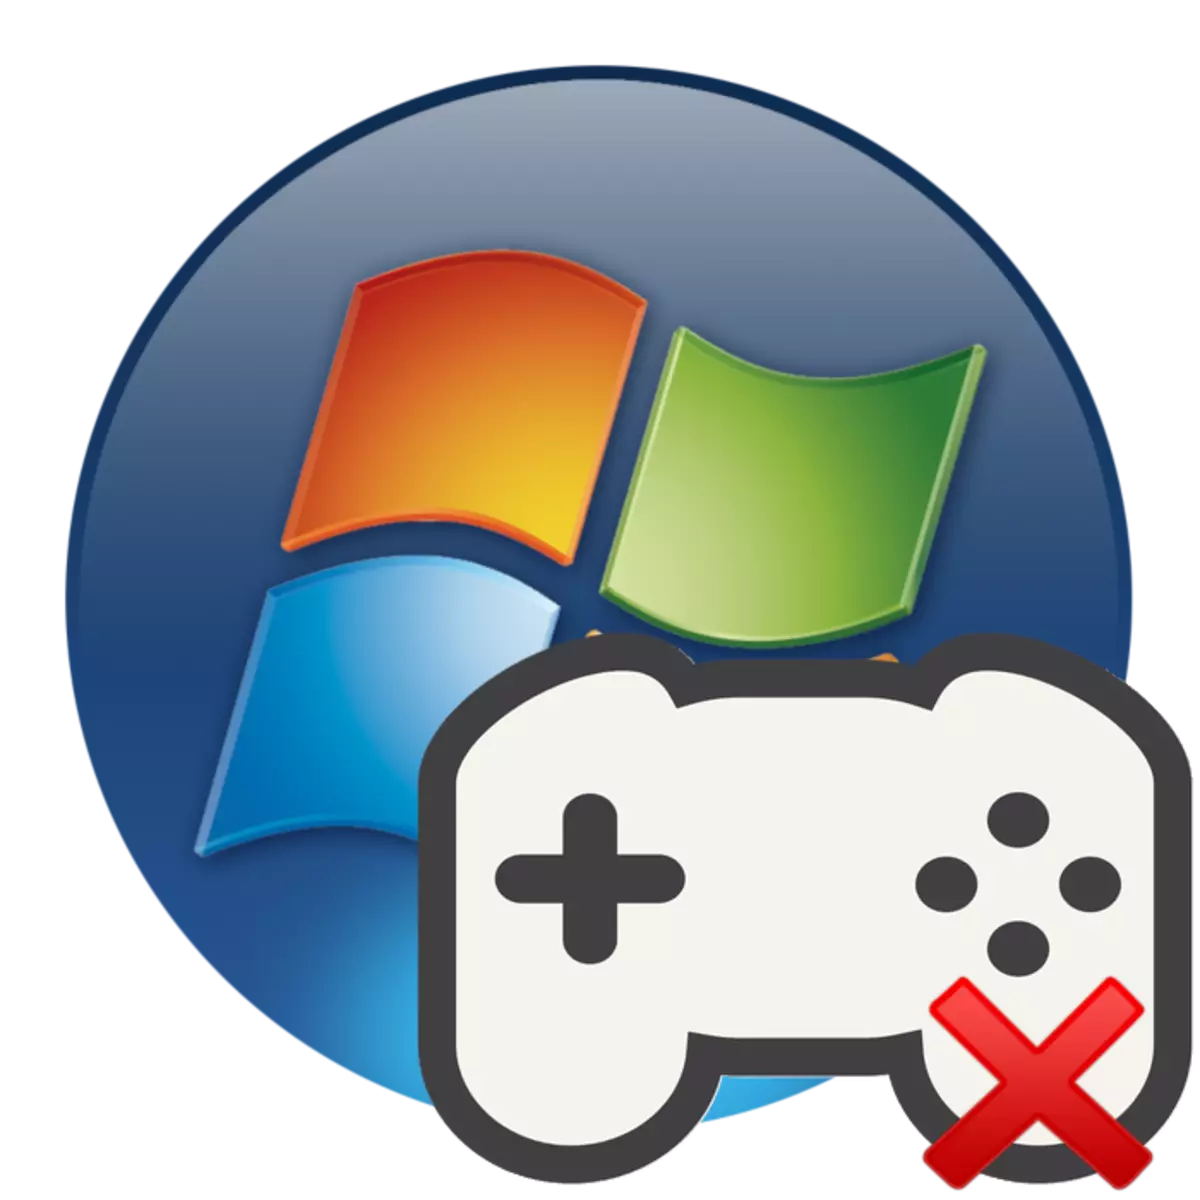 Ciyaarta uga tuura jadwalka desktop-kaaga ee Windows 7